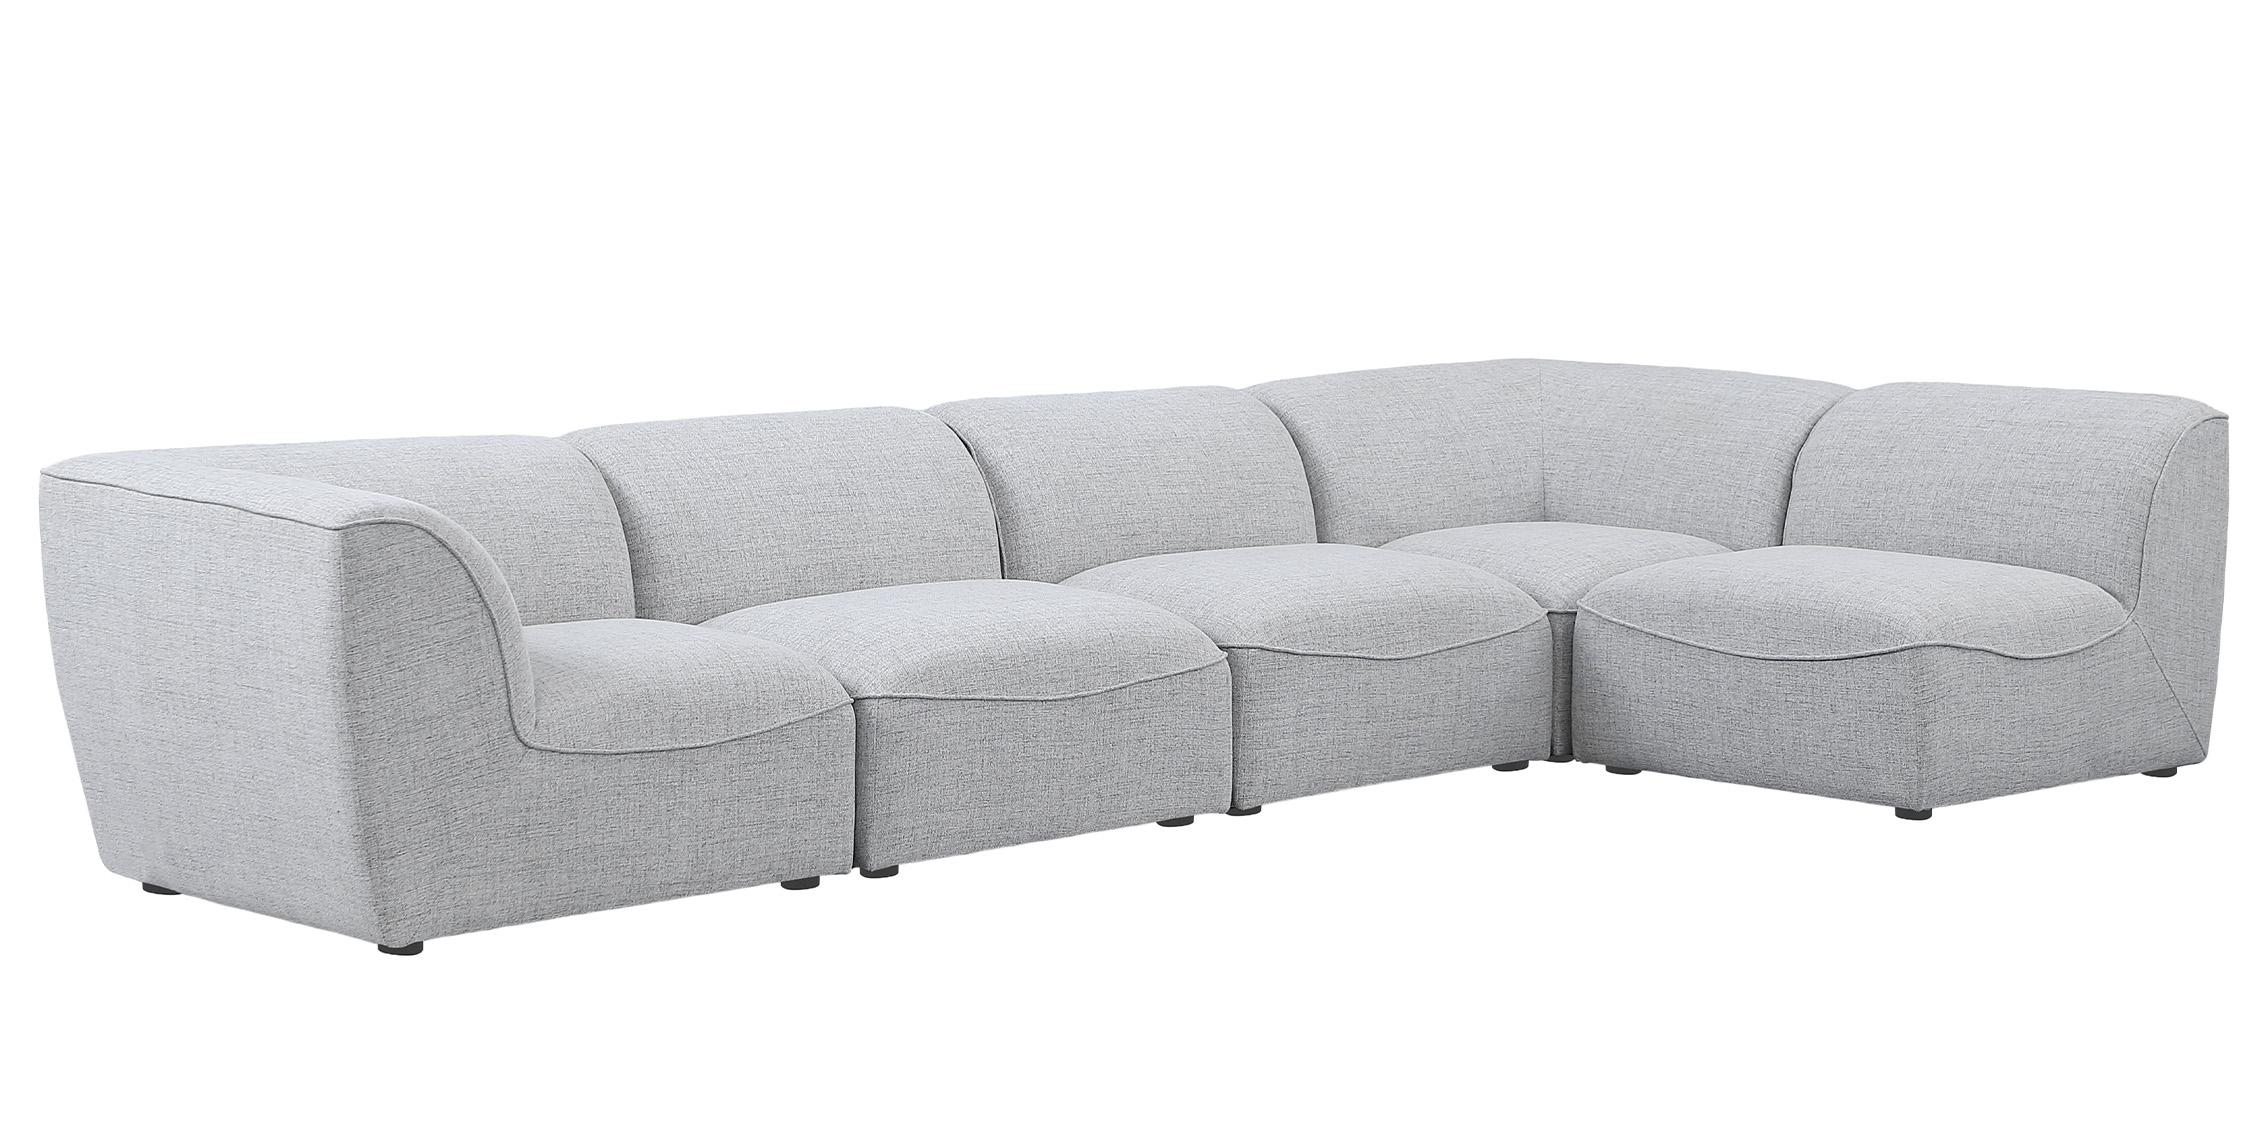 

    
683Grey-Sec5D Meridian Furniture Modular Sectional Sofa
